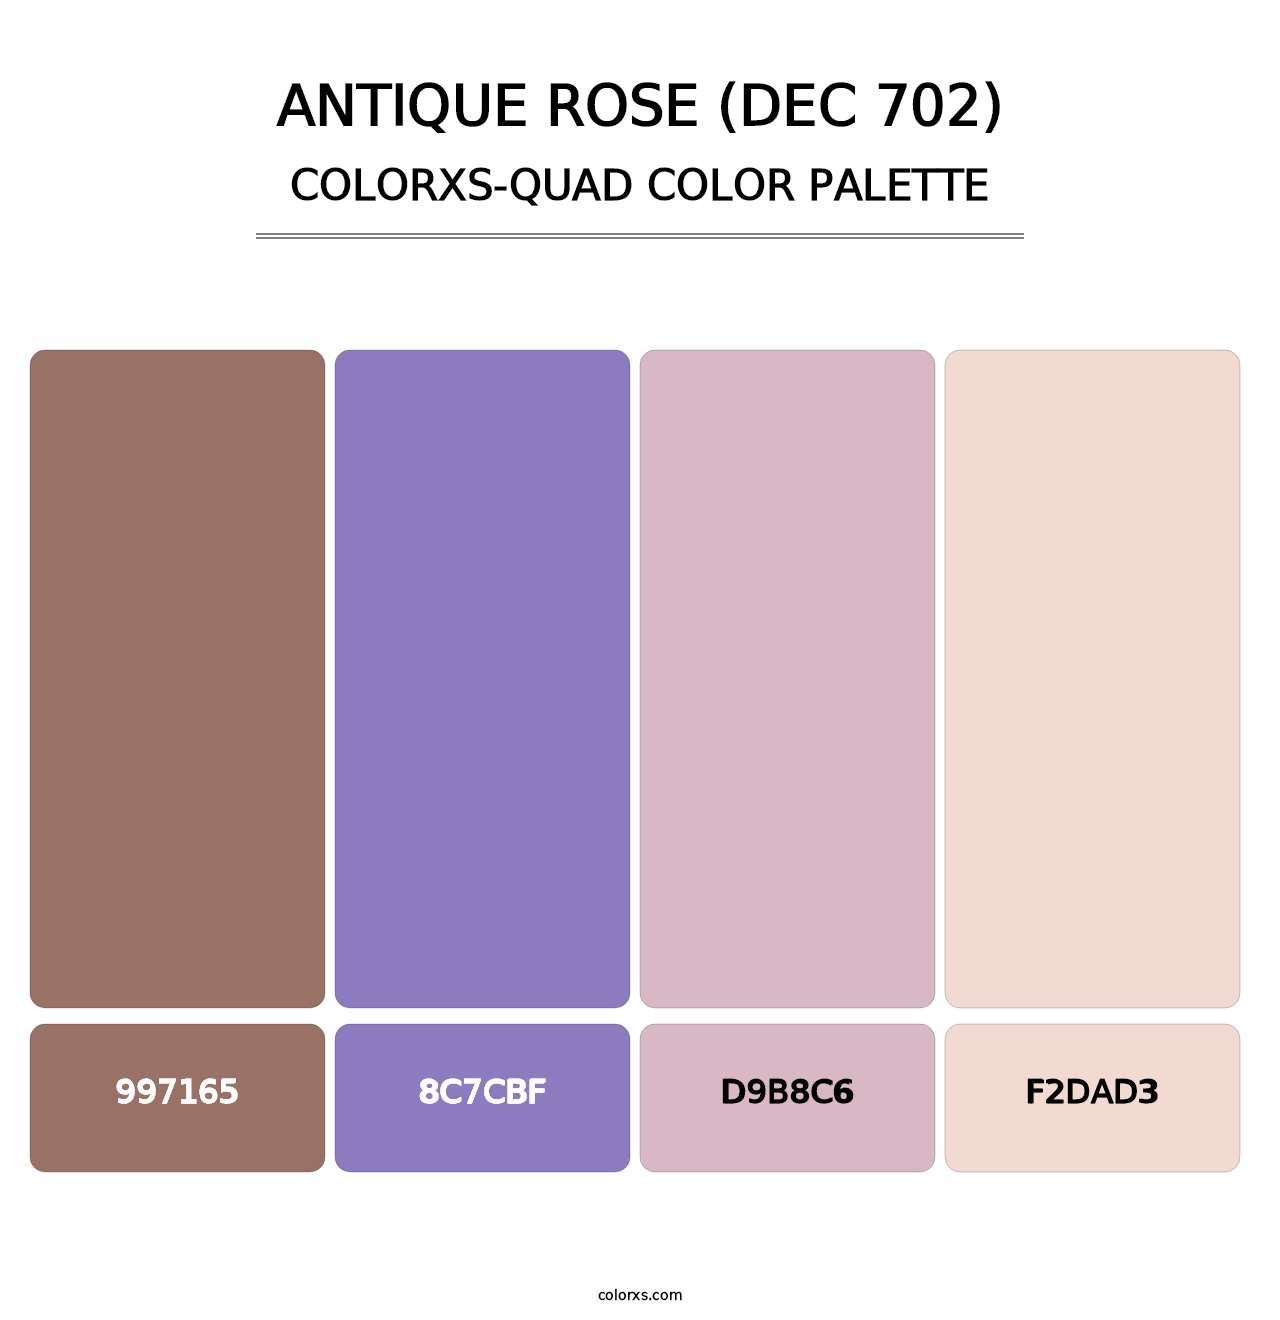 Antique Rose (DEC 702) - Colorxs Quad Palette